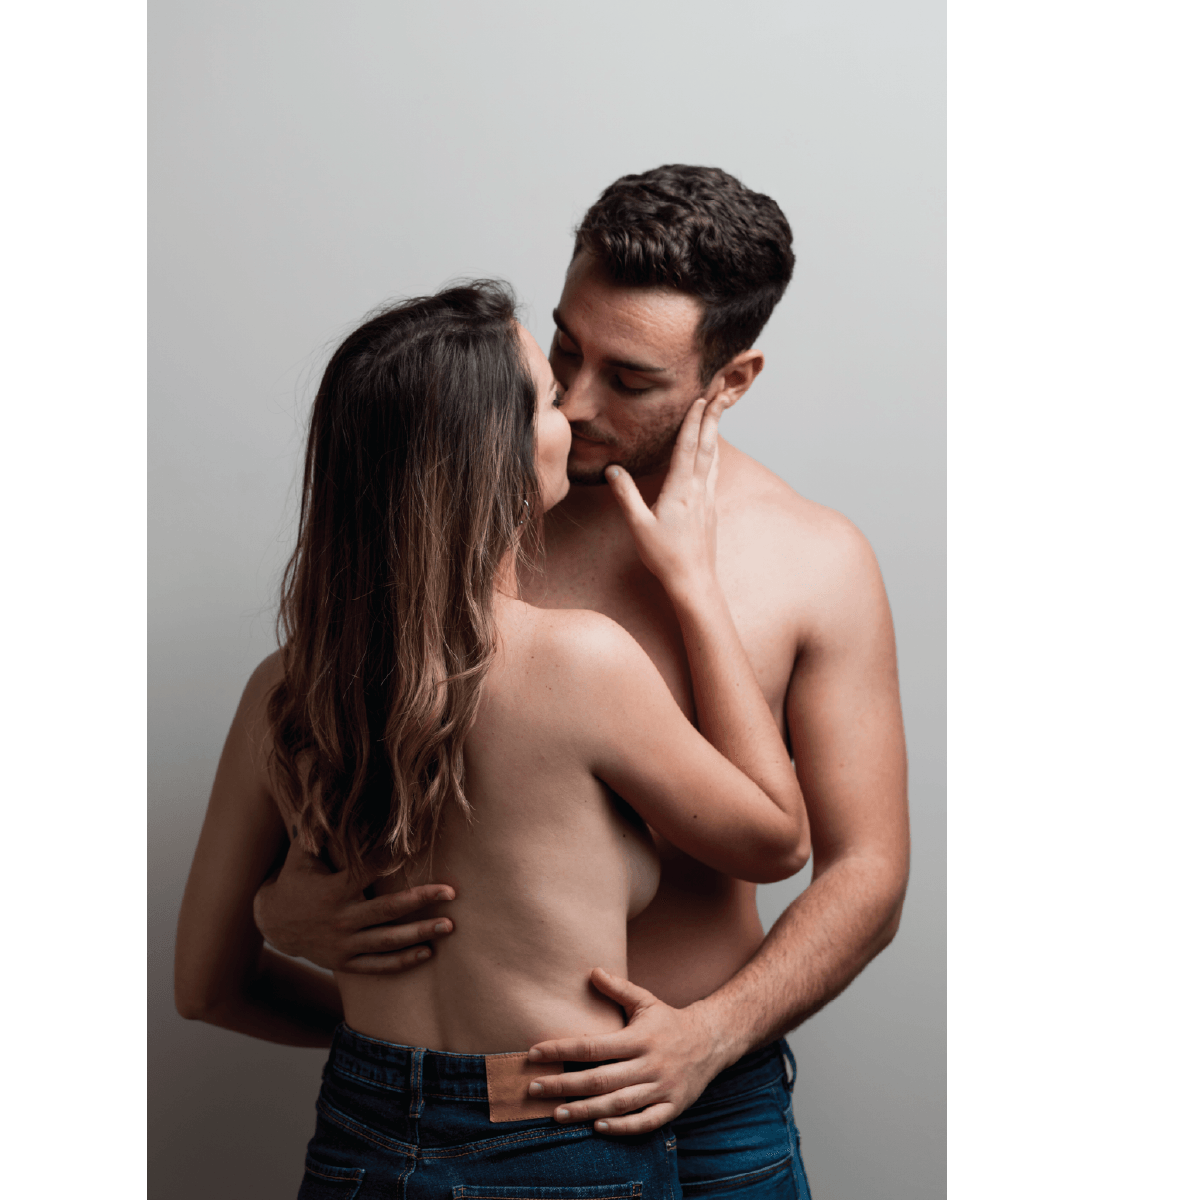 Întreținerea Flacării în Relație: Idei Creative pentru Date Nocturn - Erotic Emporium